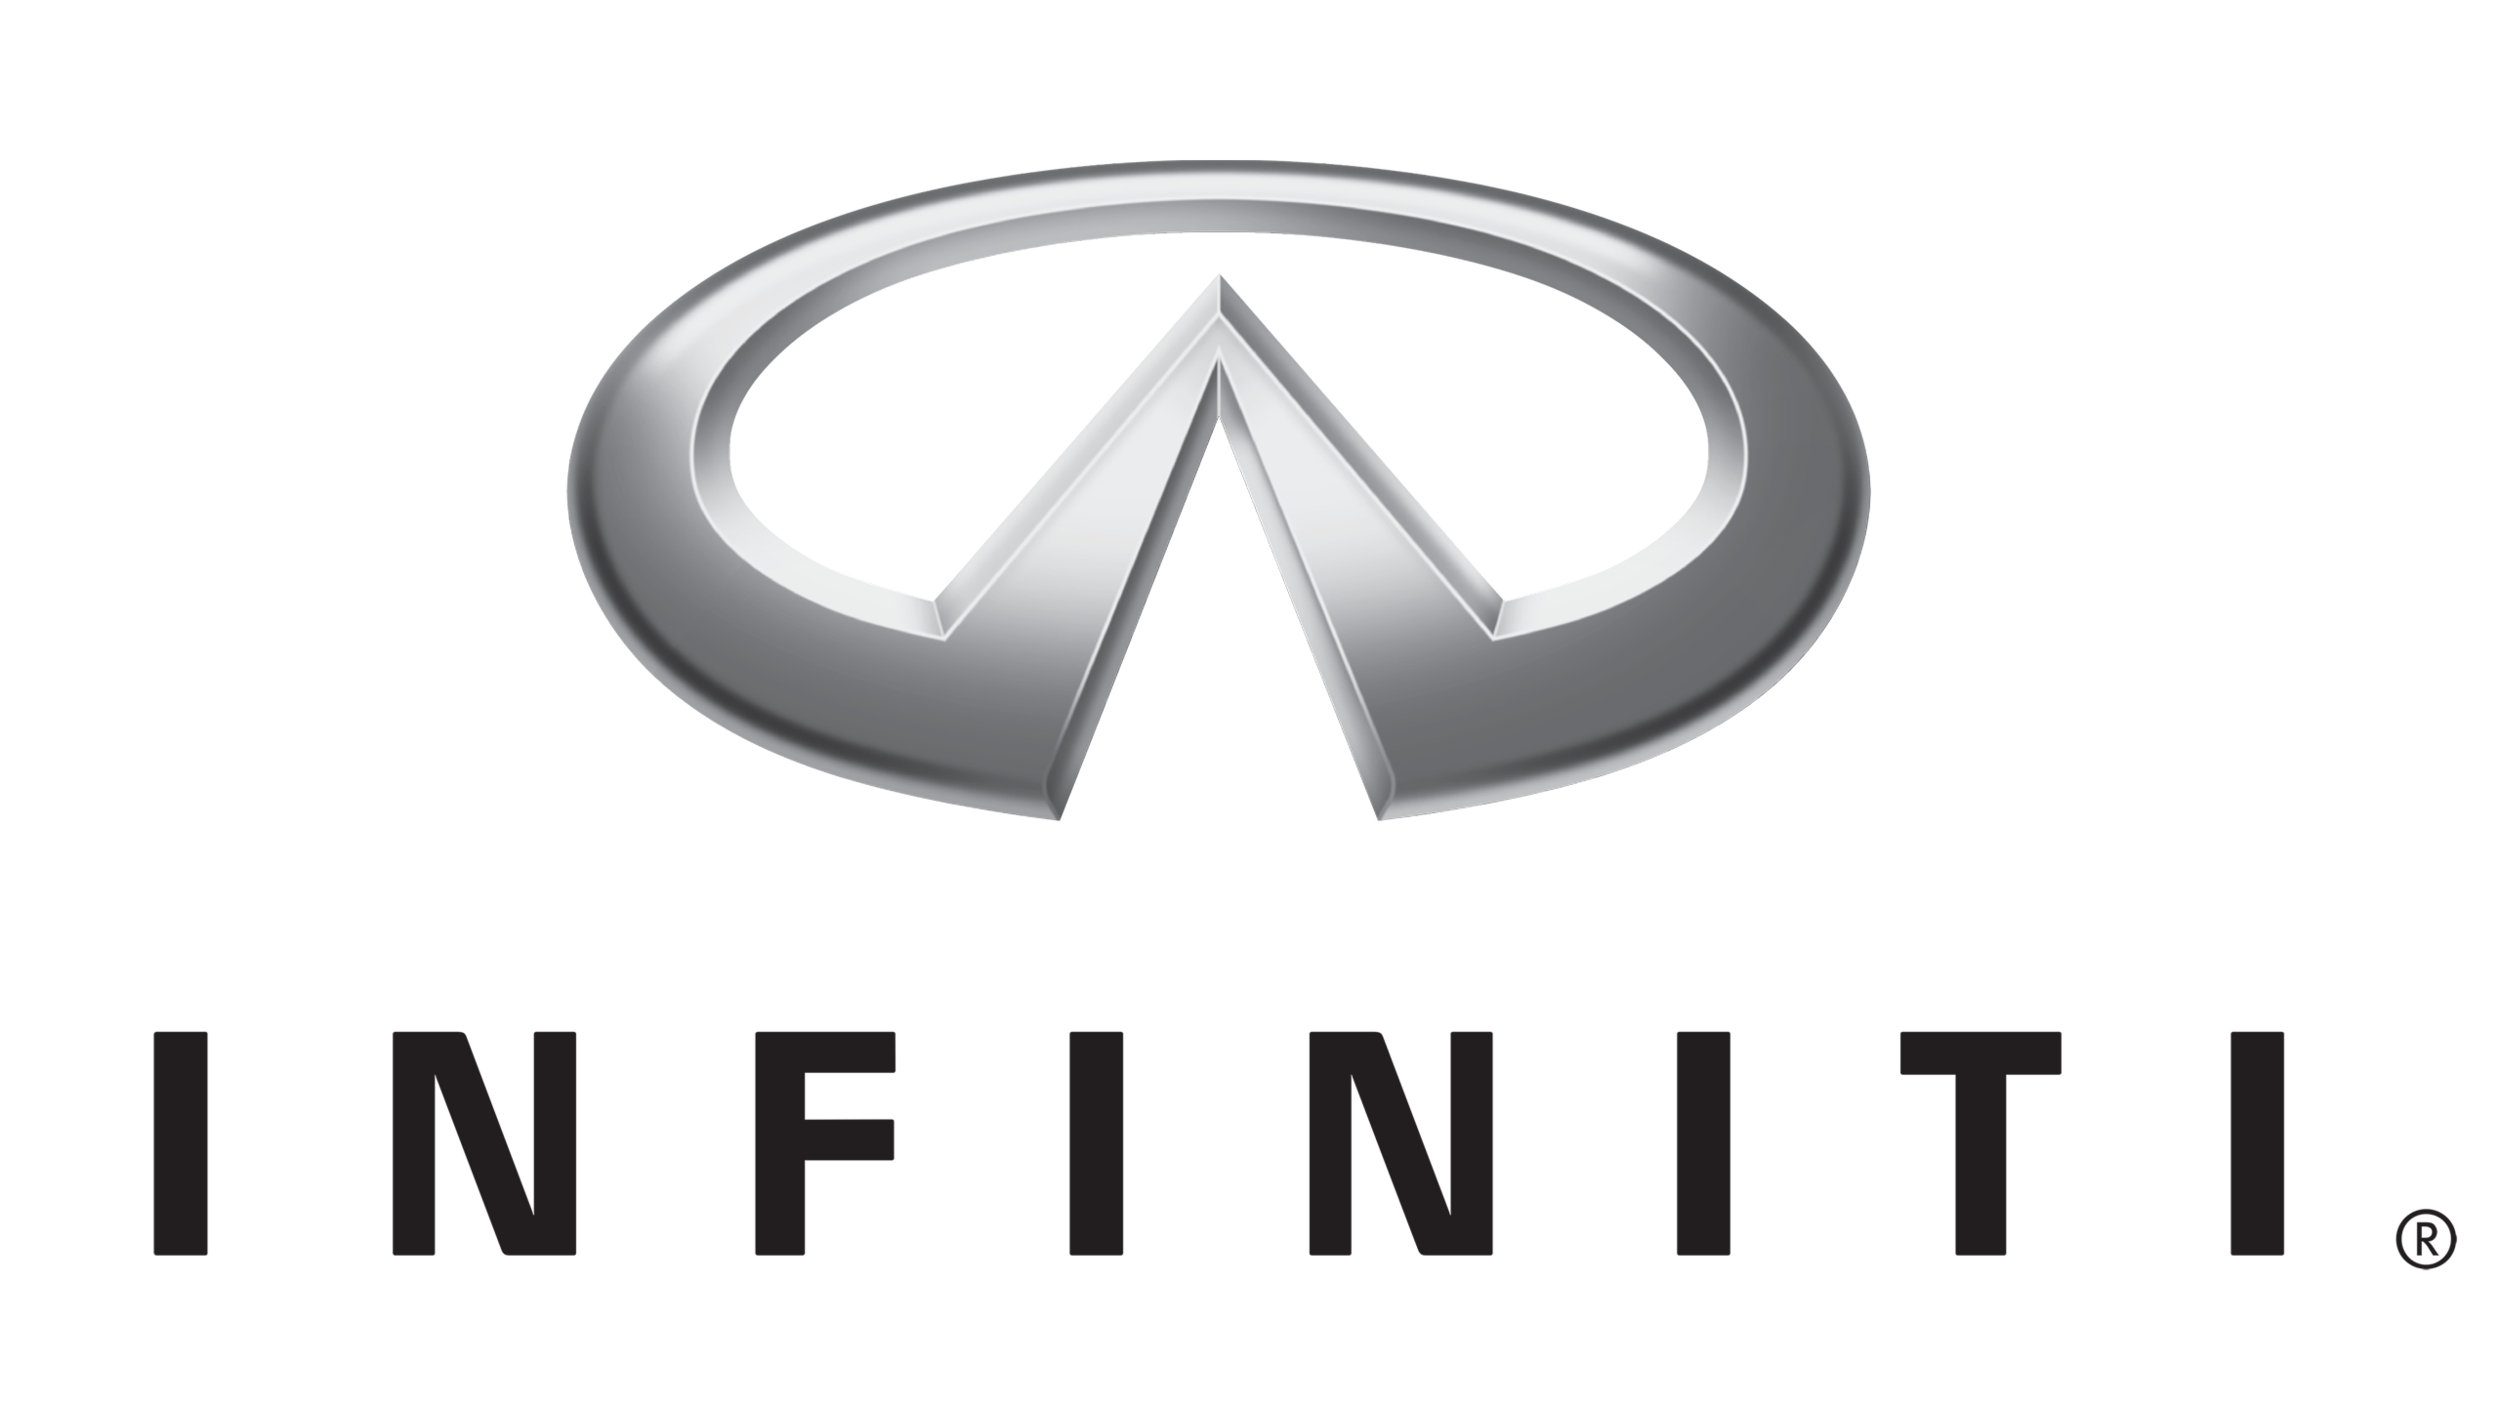 Infiniti-logo-1989-2560x1440.png